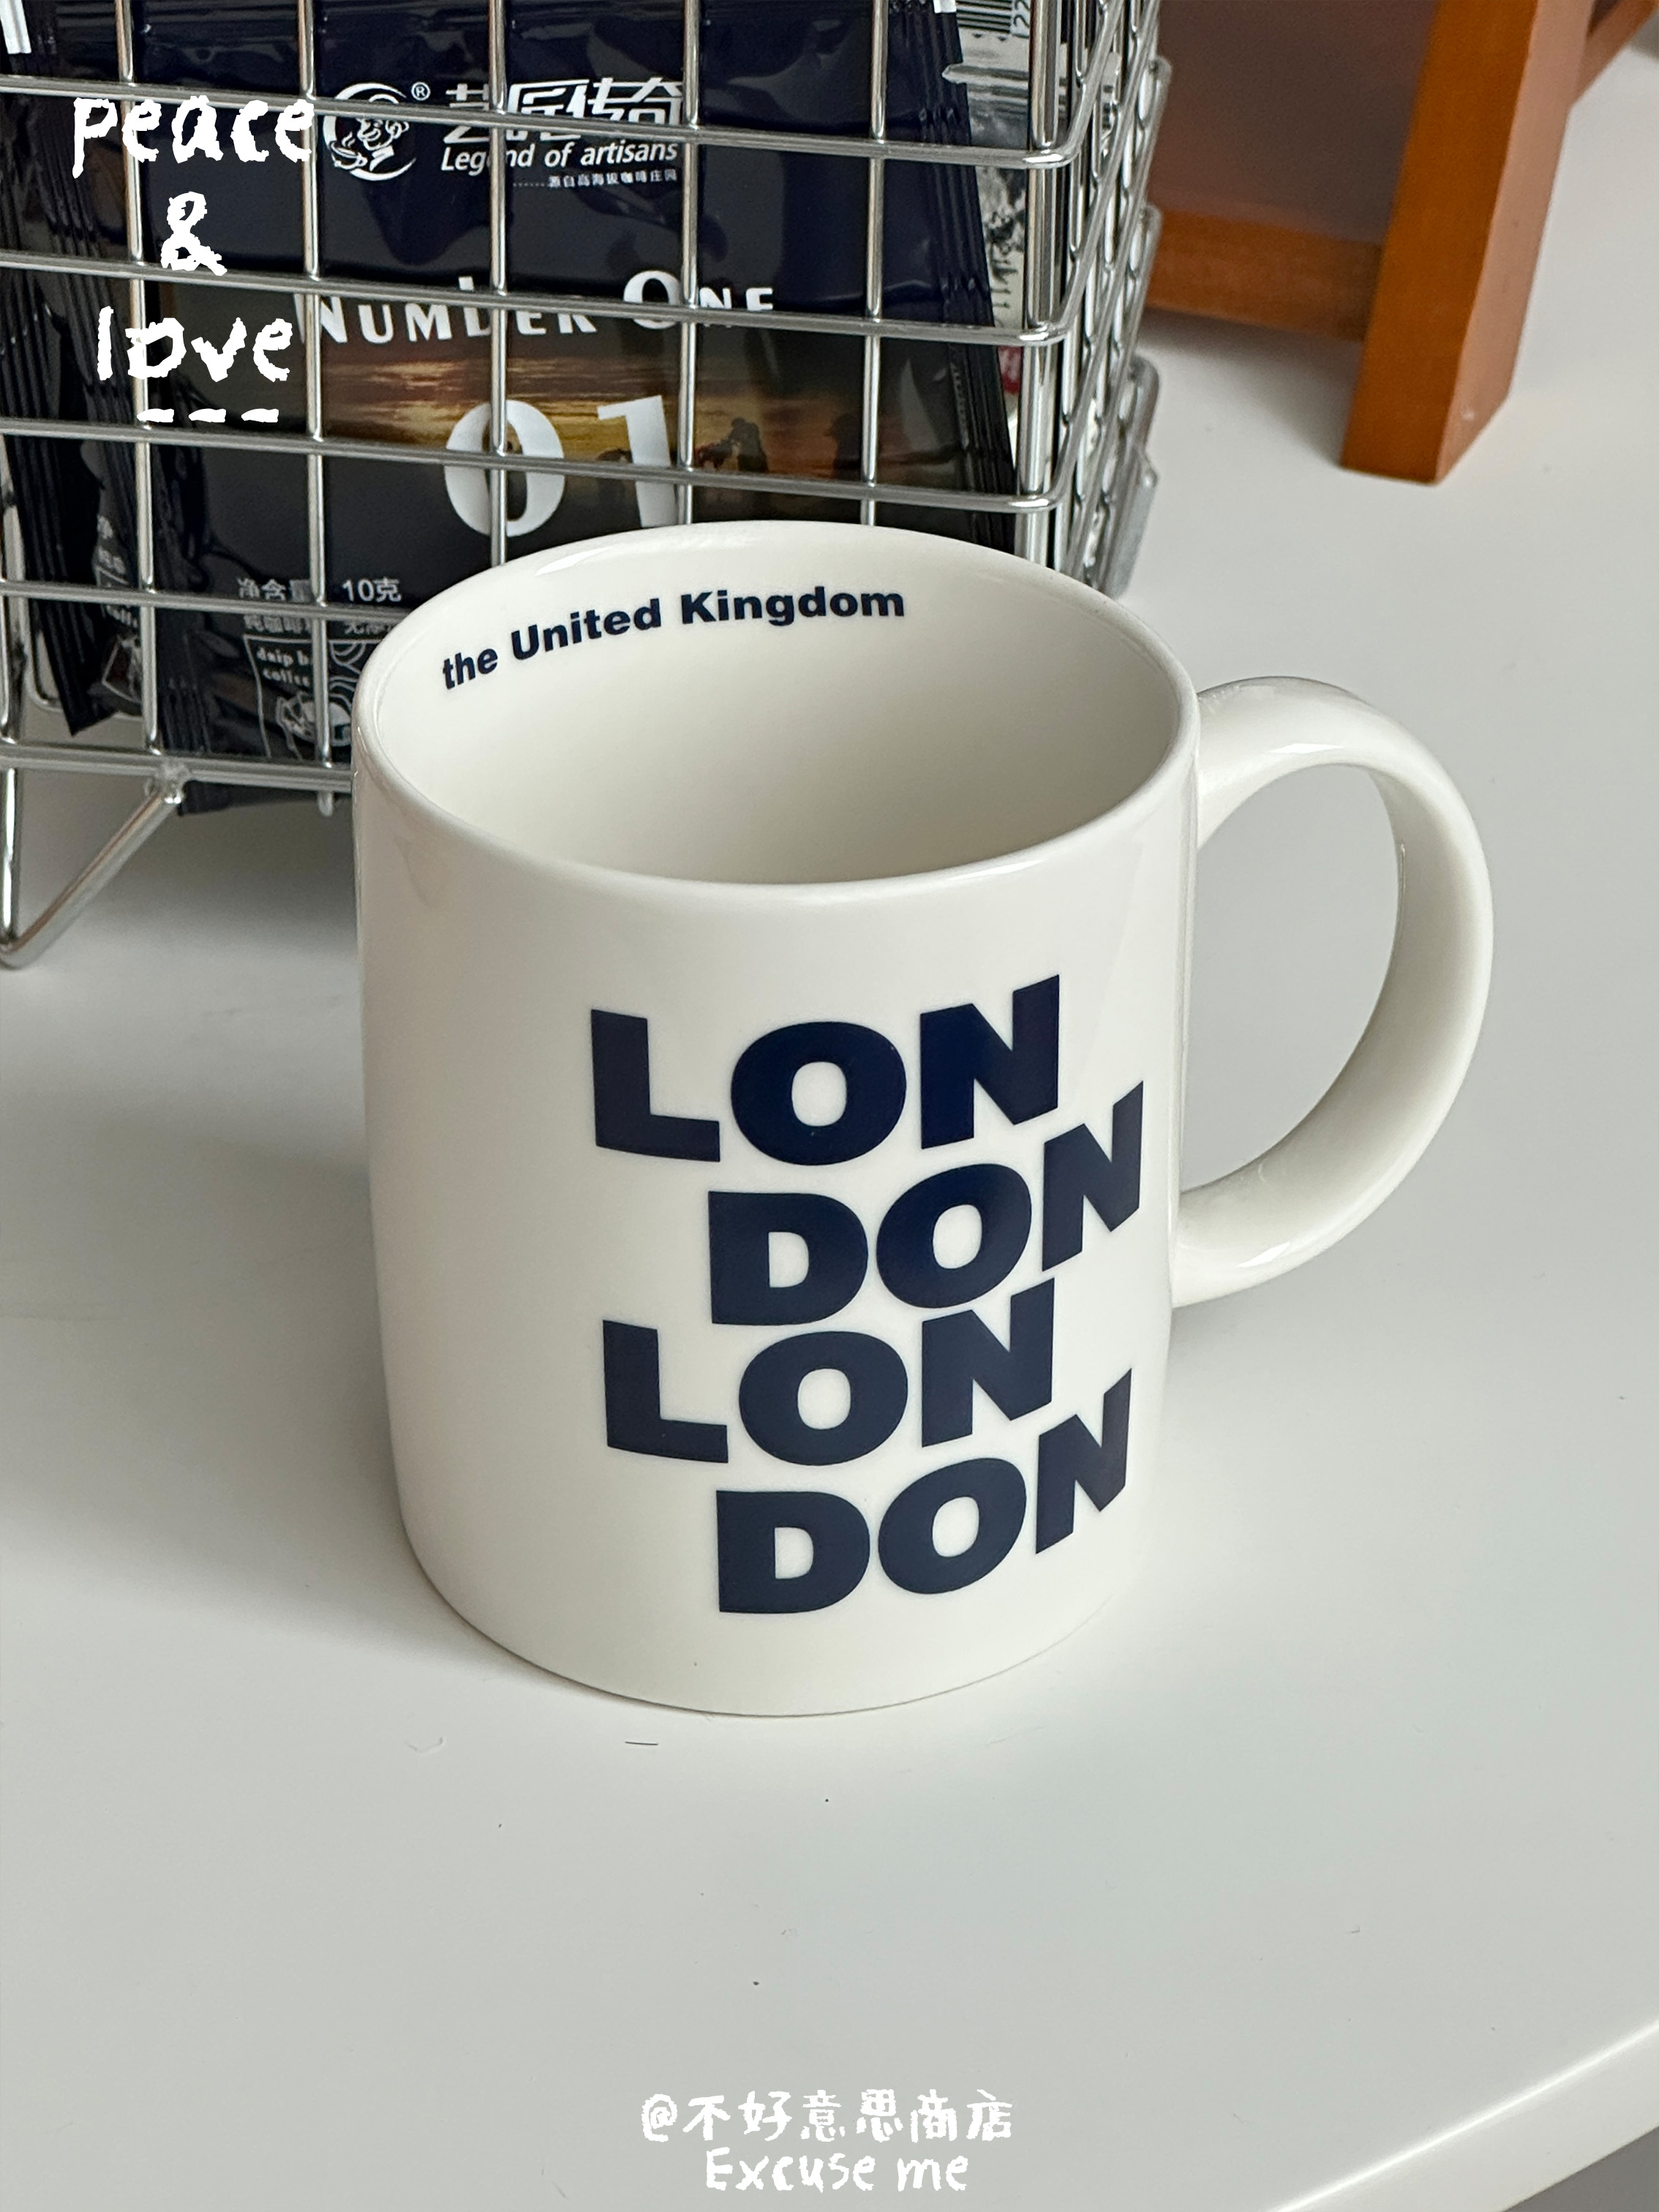 城市地名LONDON伦敦藏蓝色字母英文咖啡杯纪念简约陶瓷骨瓷马克杯 - 图2